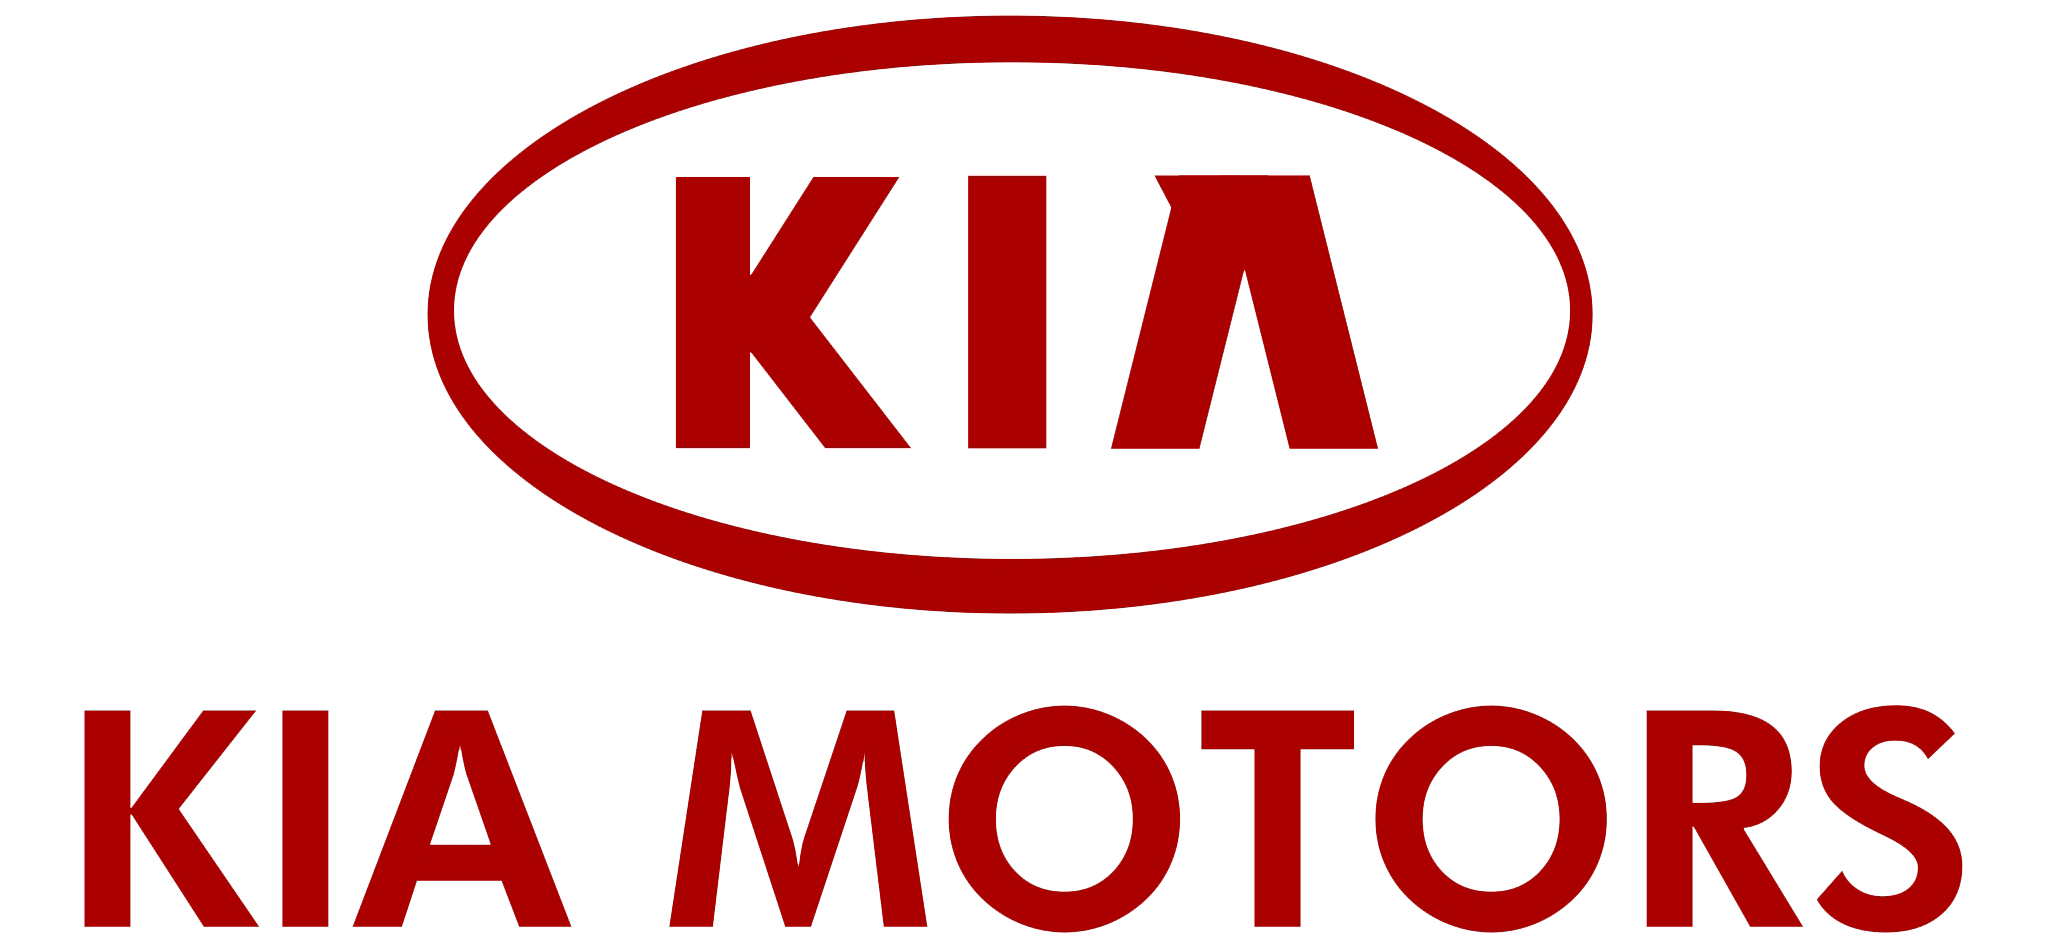 kia_motors